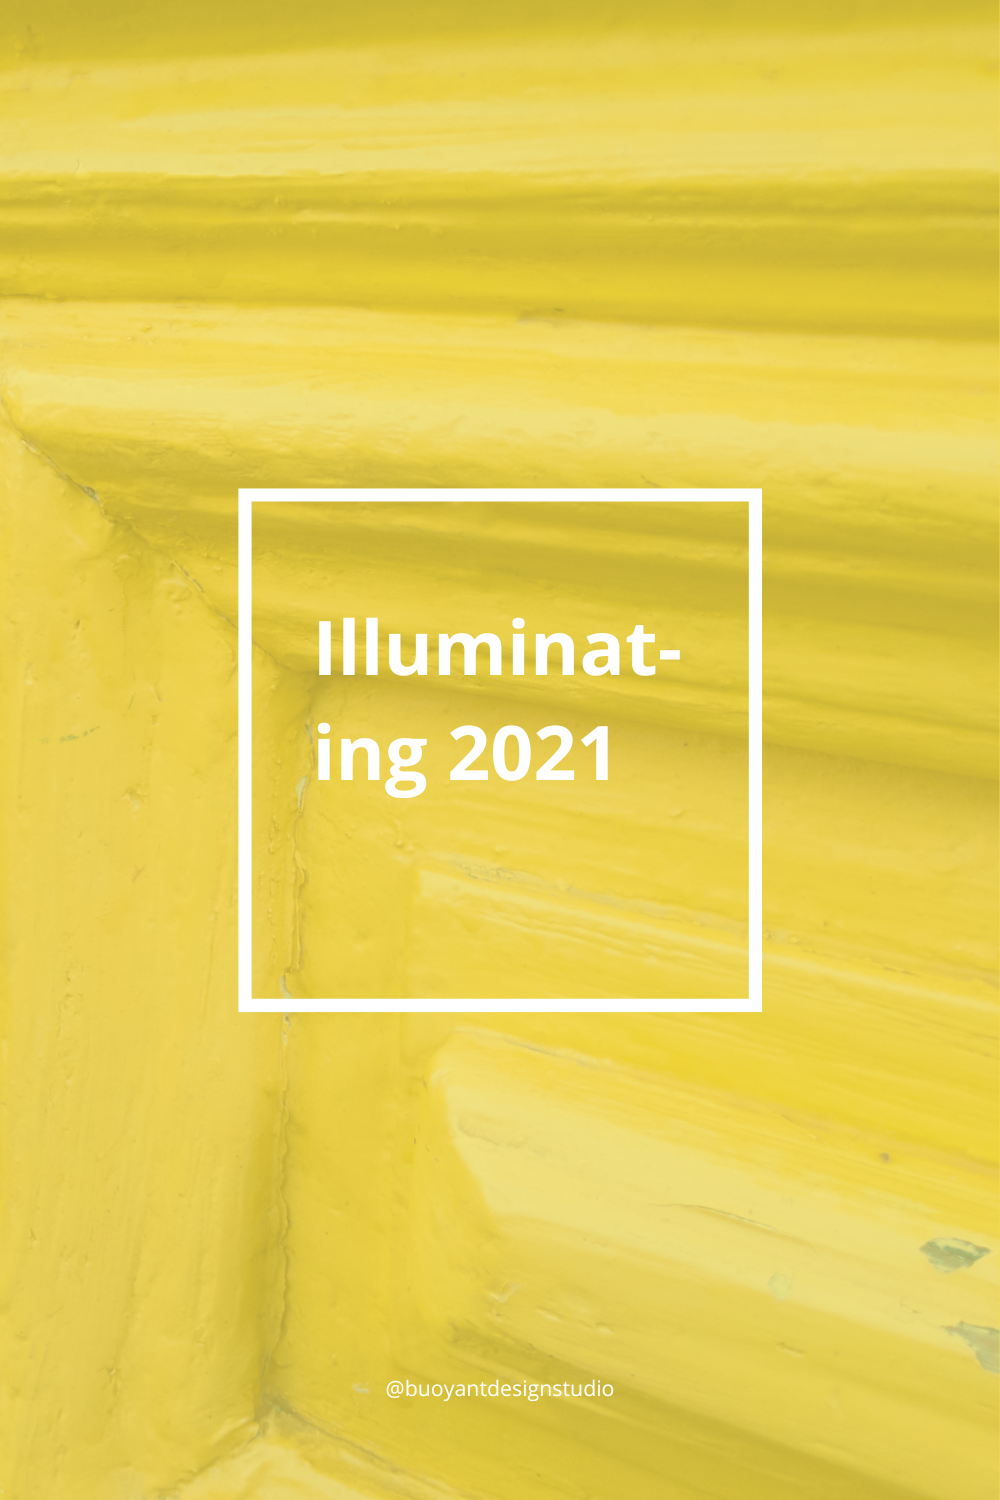 Illuminating 2021